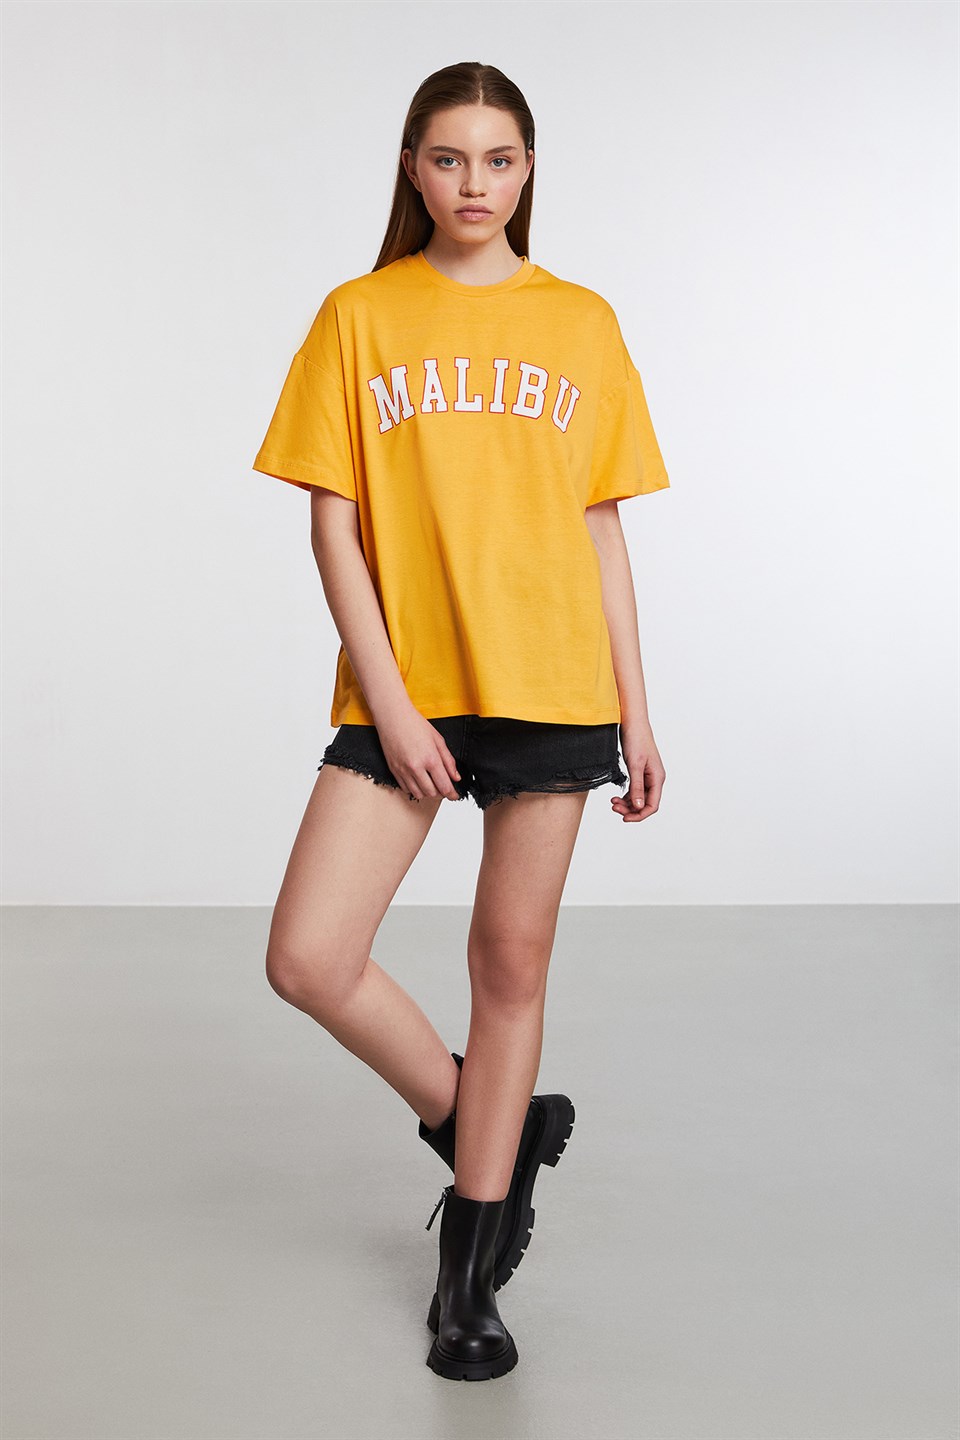 PUERTO Kadın Safran Sarı Baskılı Yuvarlak Yaka Comfort Fit T-Shirt